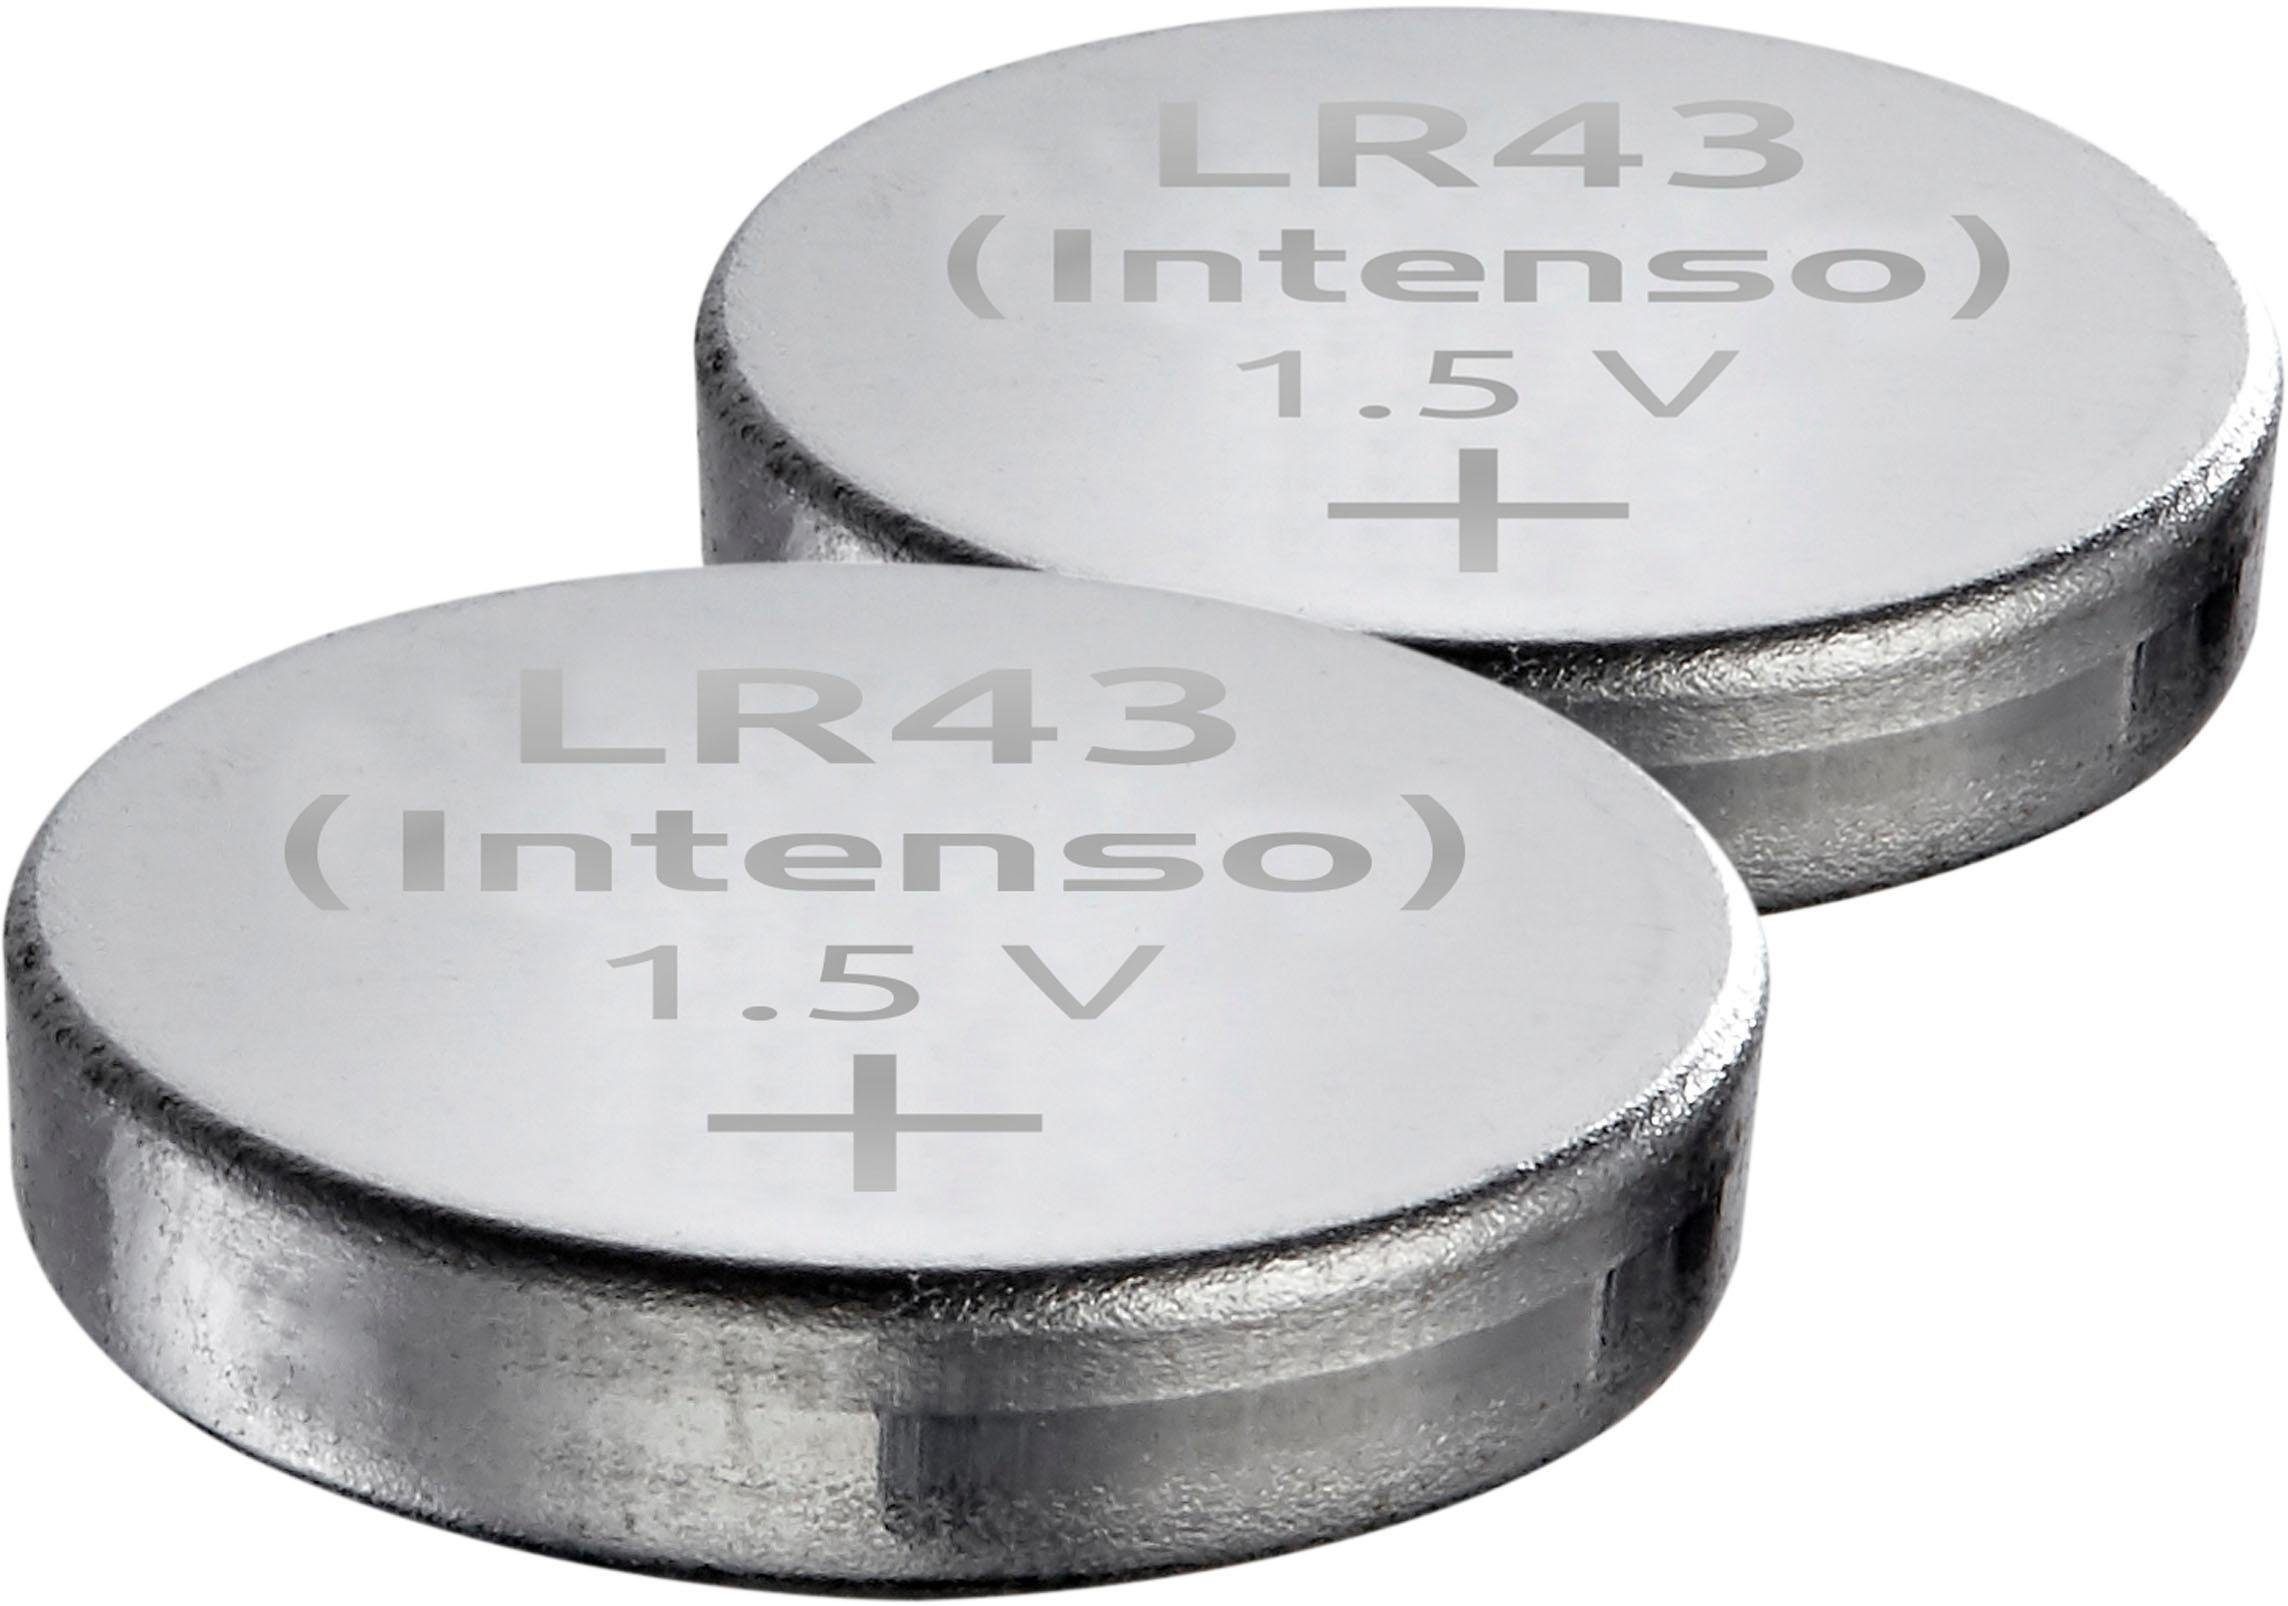 Intenso 2er Pack Energy Ultra LR 43 Knopfzelle, (2 St)